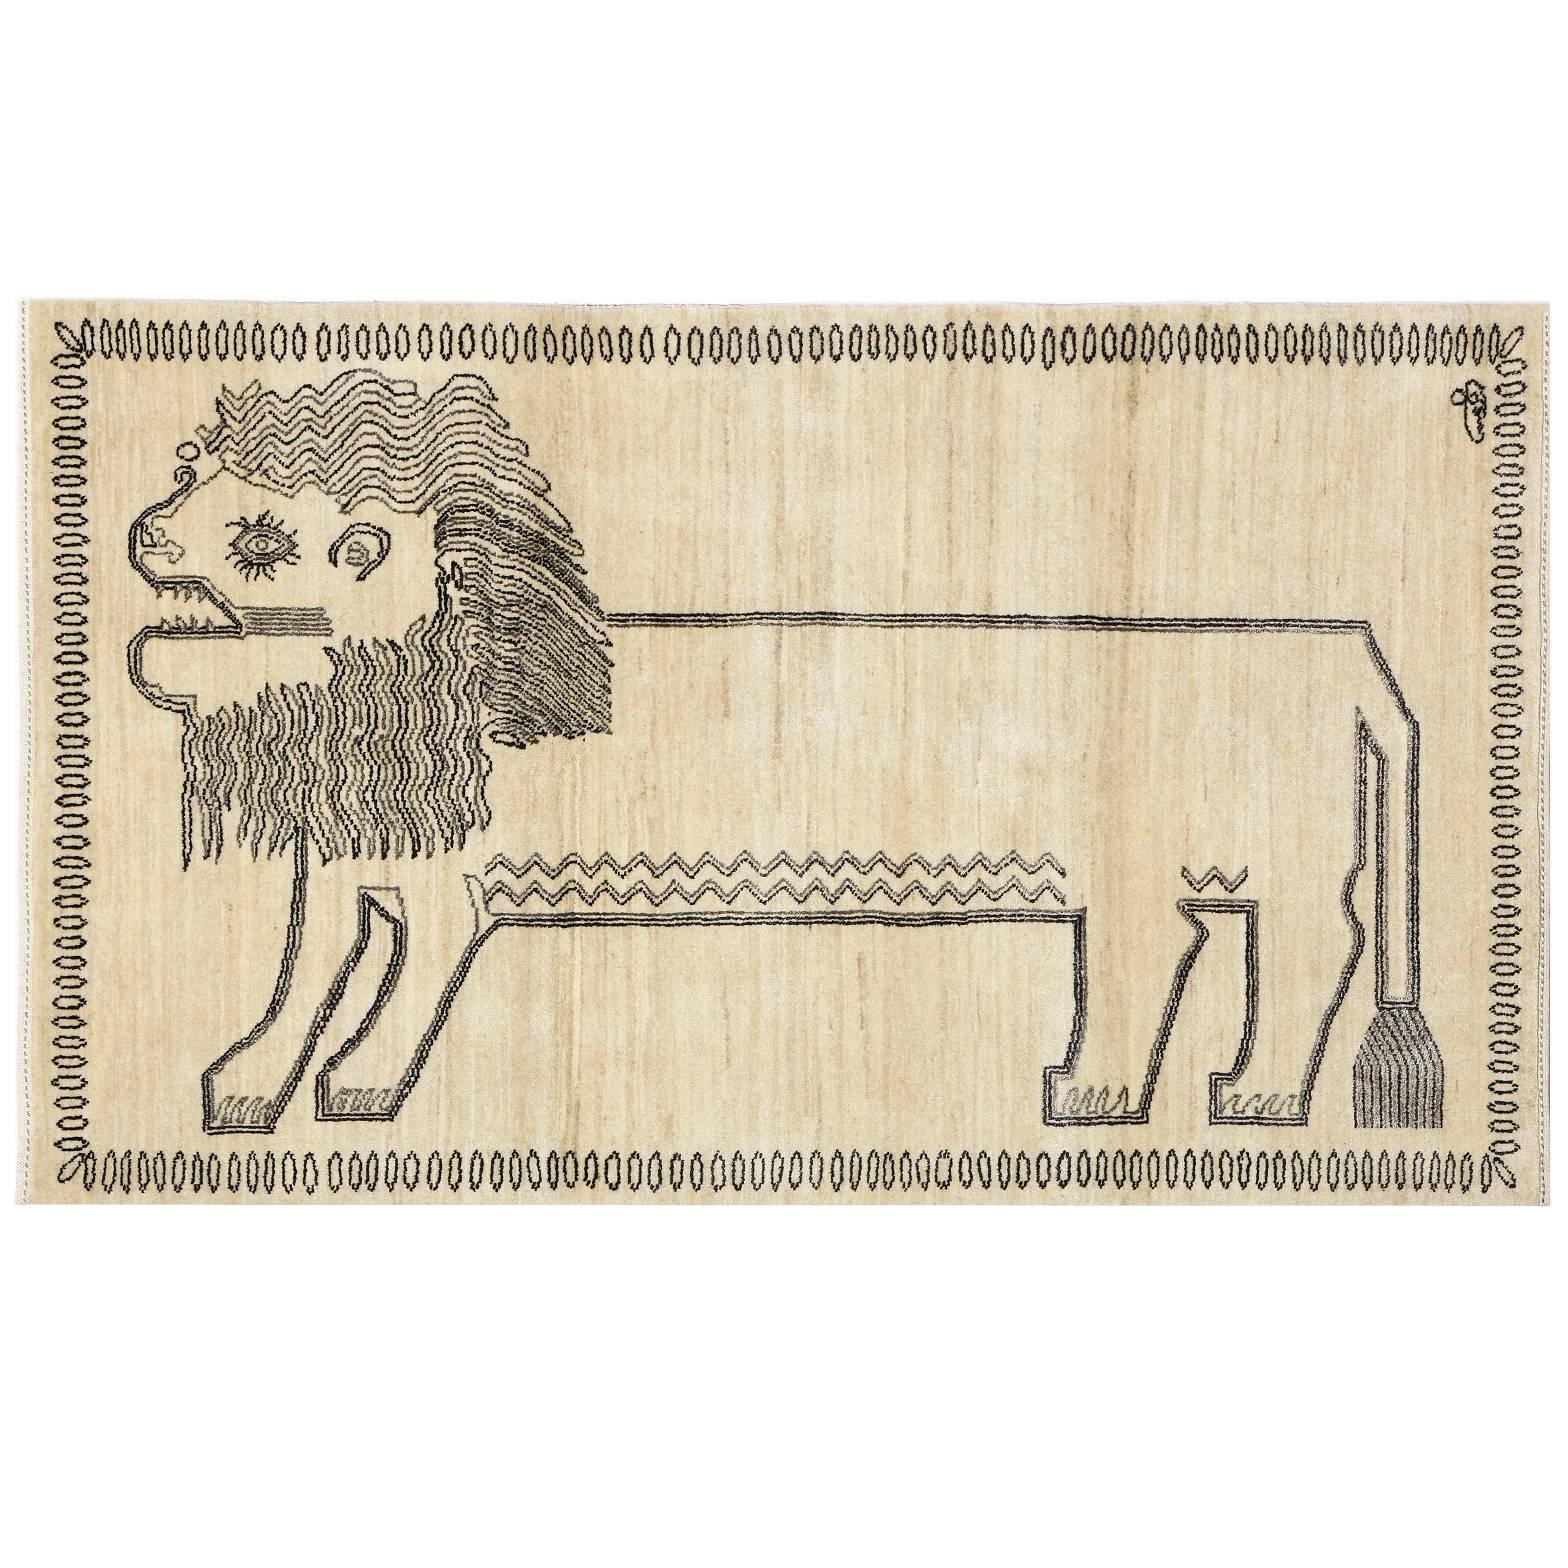 Orley Shabahang Lion Persian Tribal Animal Rug, 3' x 5'  For Sale